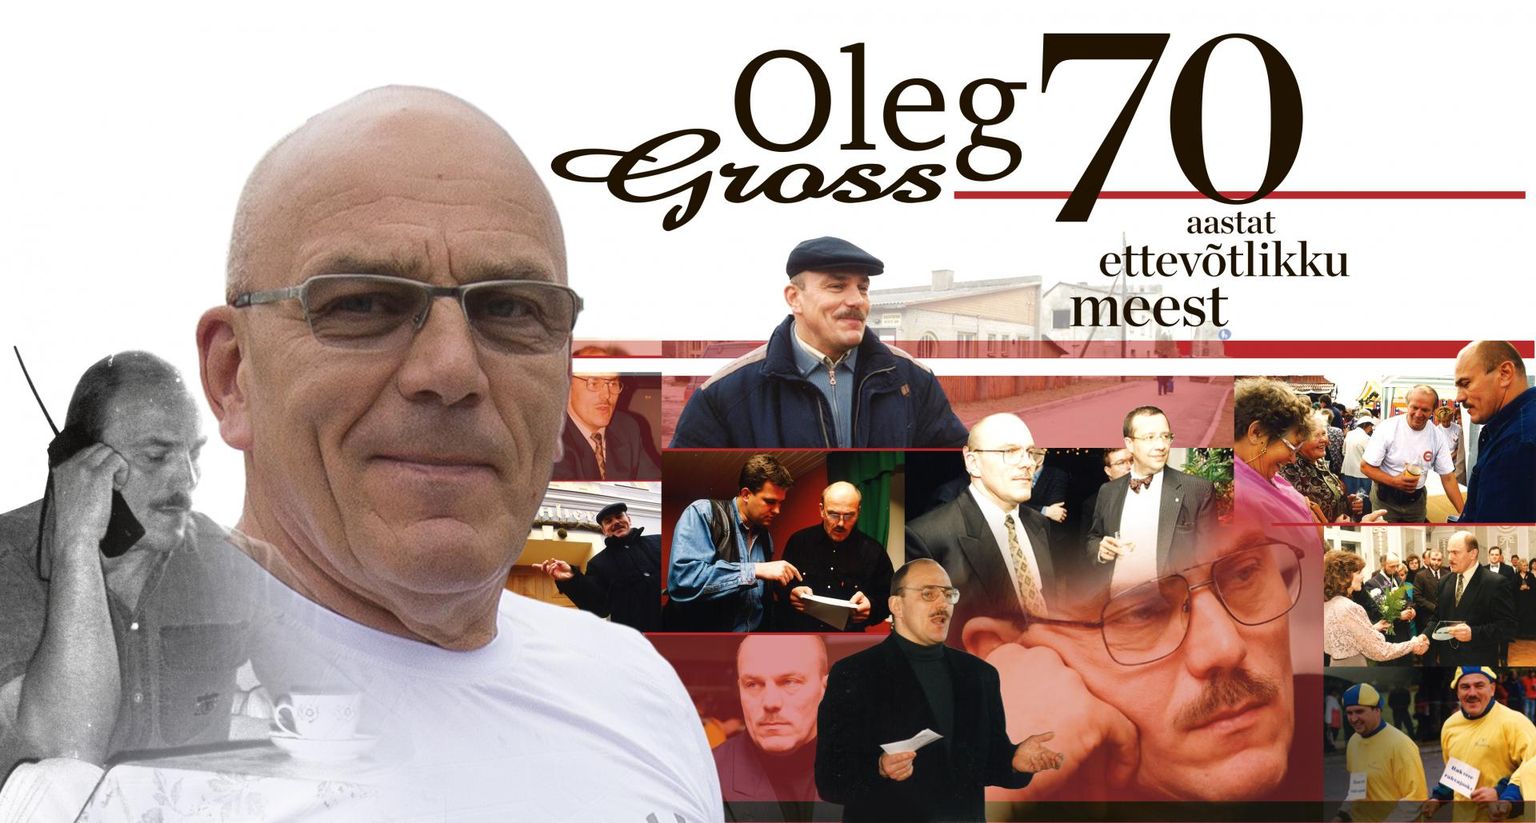 Oleg Gross tõusis ettevõtjana pildile juba 1990-ndate alguses ja ehitas üles AS-i OG Elektra ning omanimelise kaubandusketi, kuhu praeguseks kuulub 72 toidukauplust.